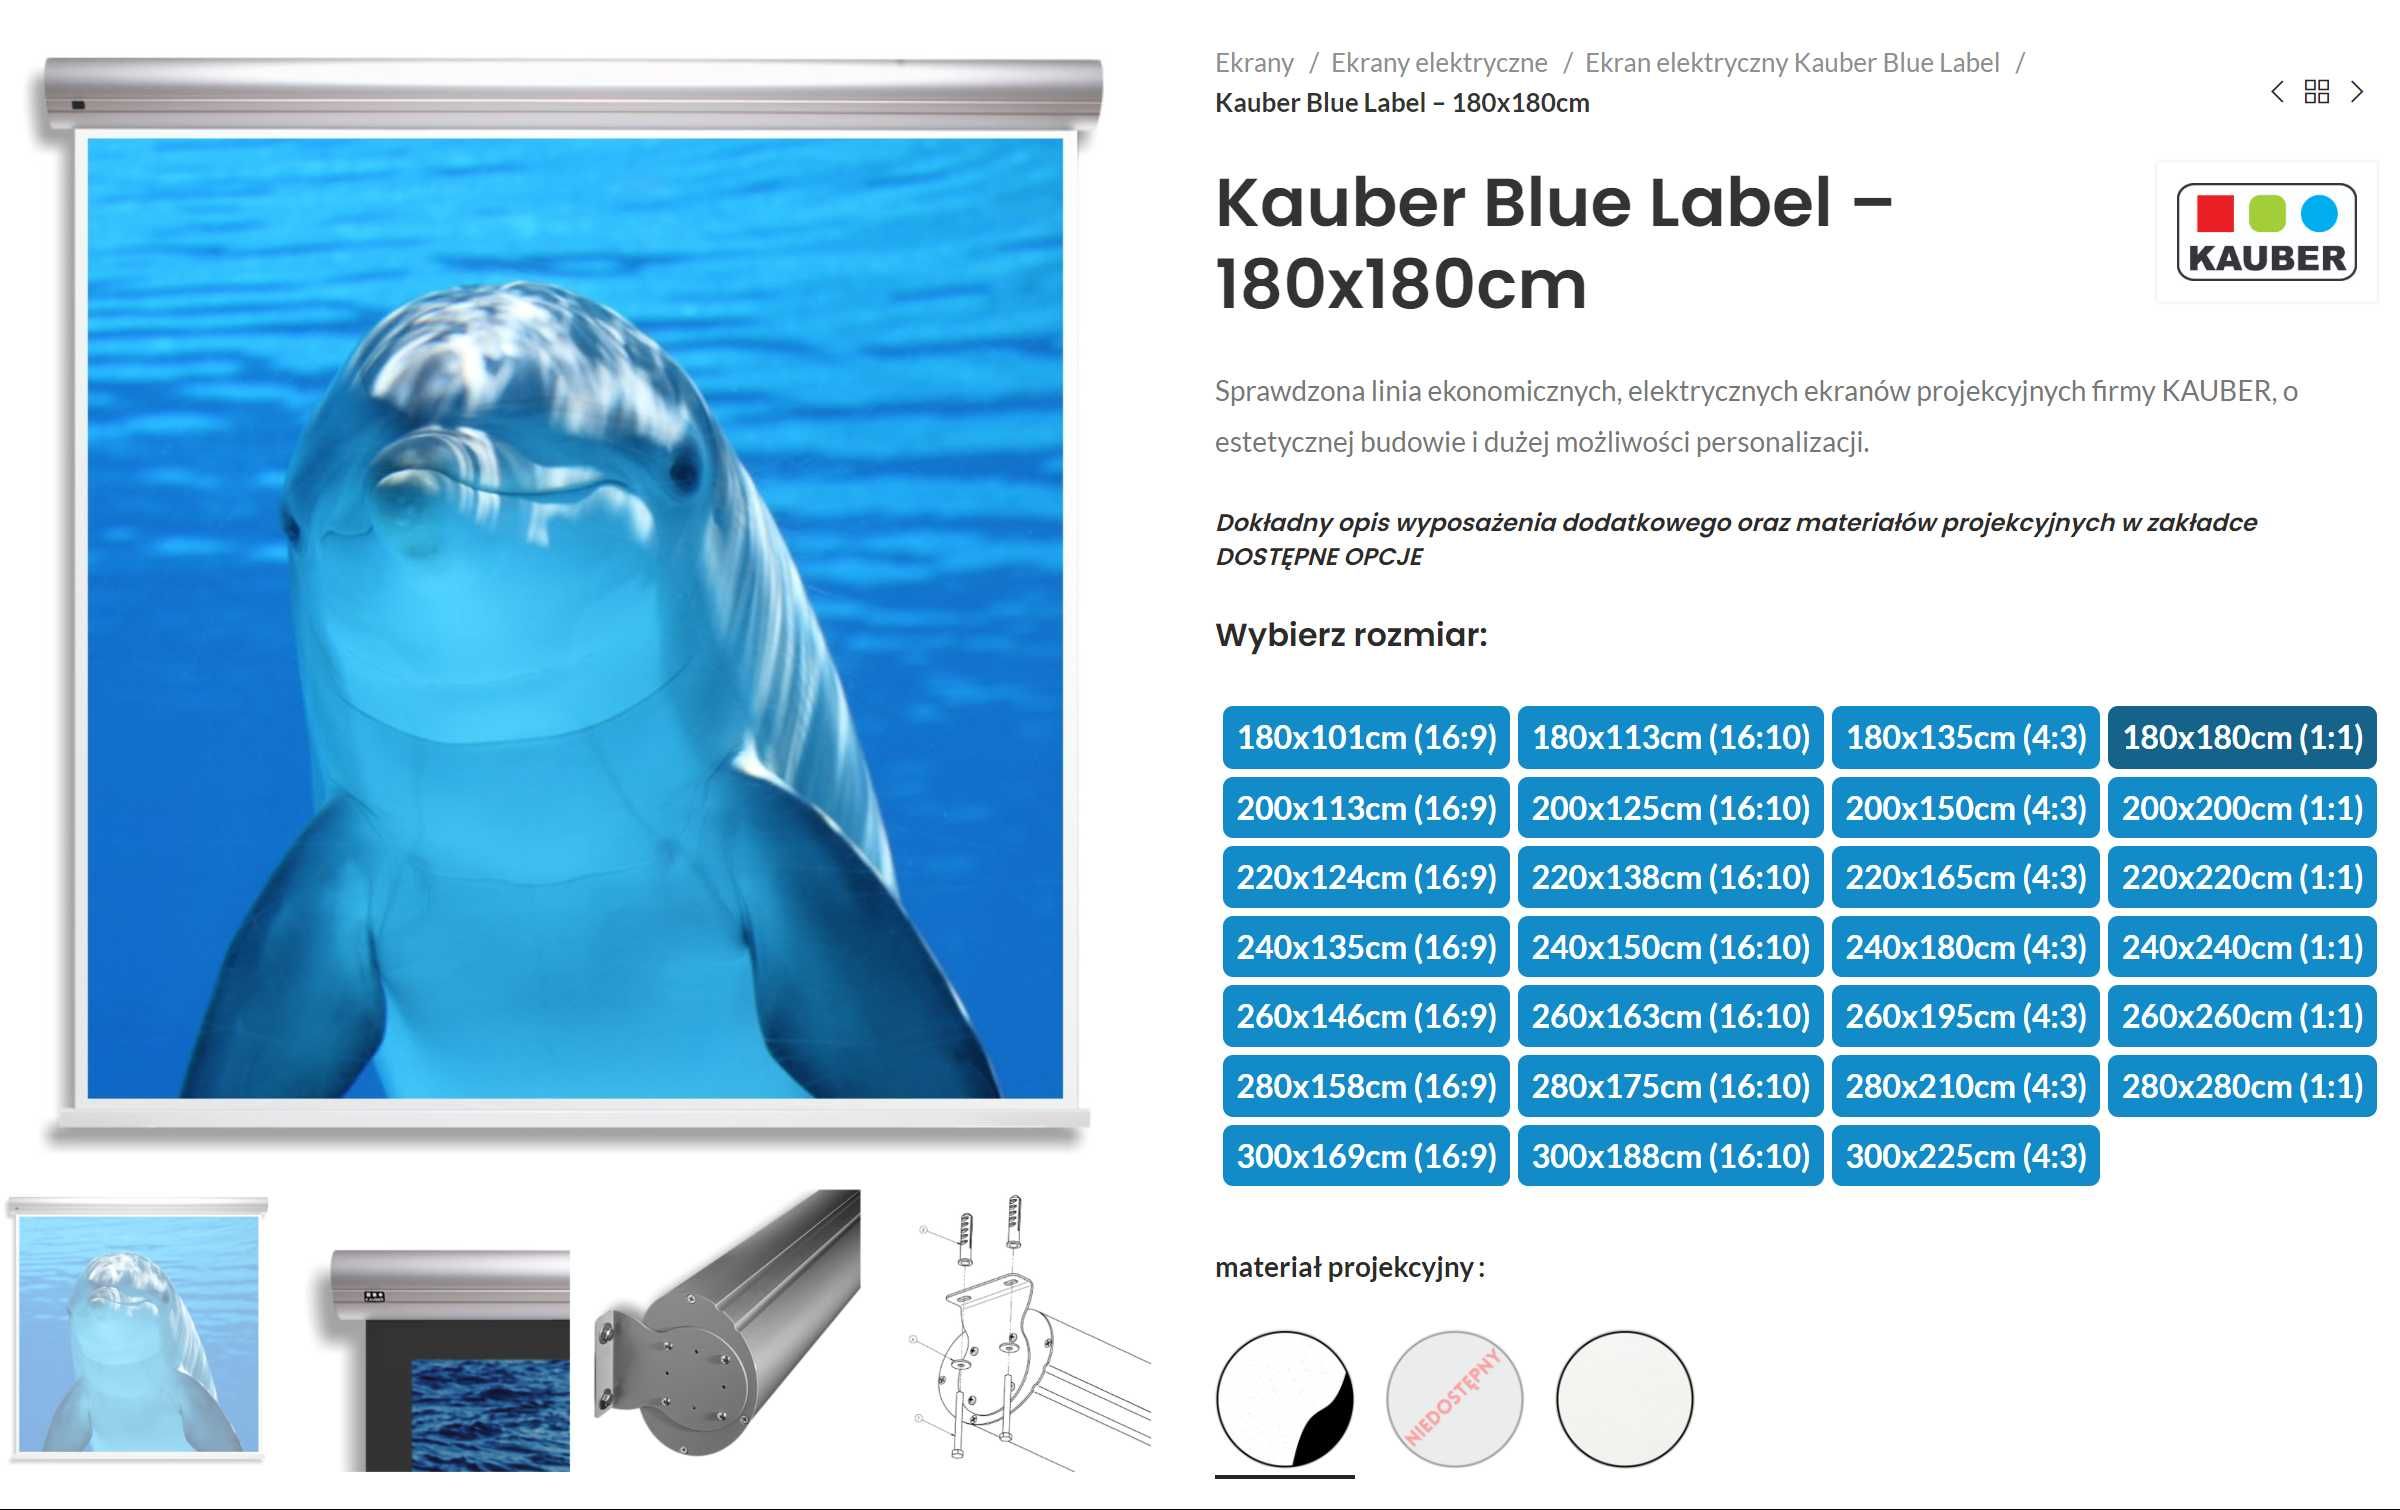 Ekran projekcyjny Kauber Blue Label